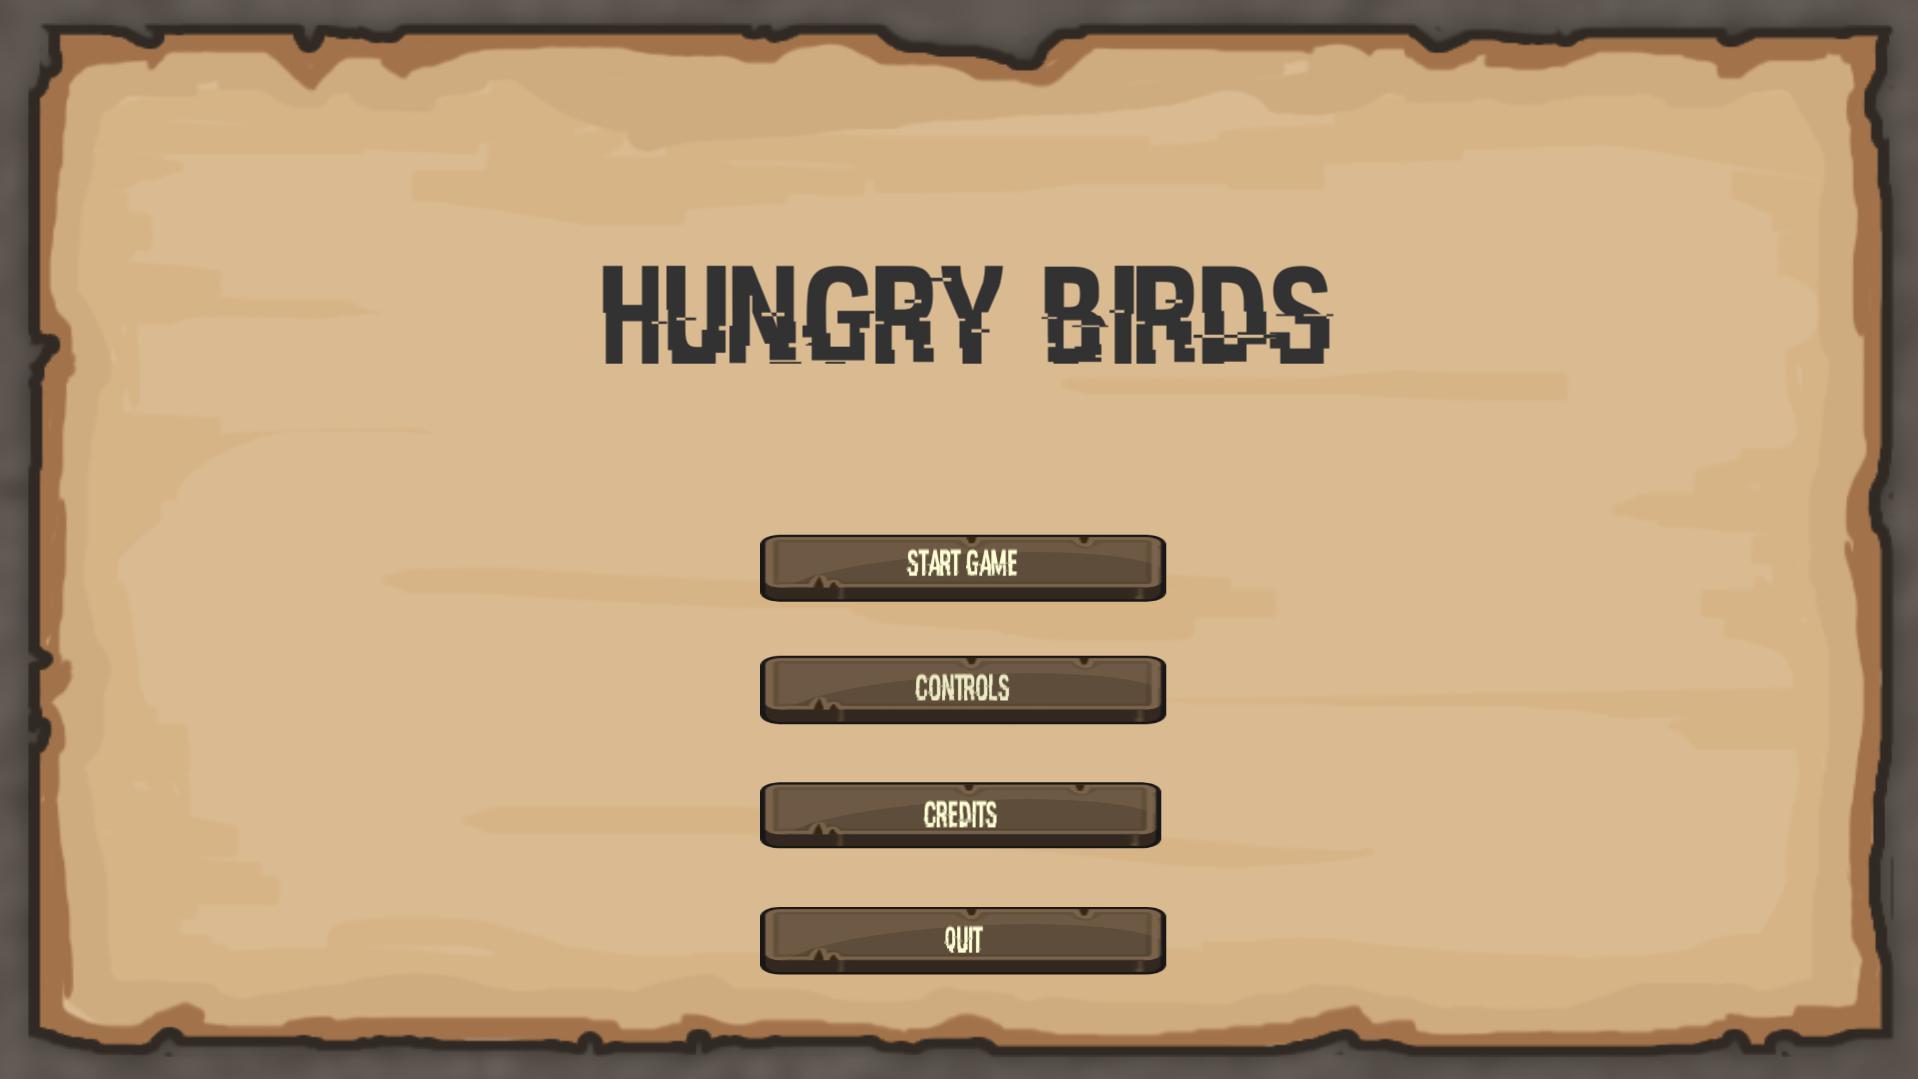 Hungry bird. Hungry Birds. Hungry Birds игра слов.